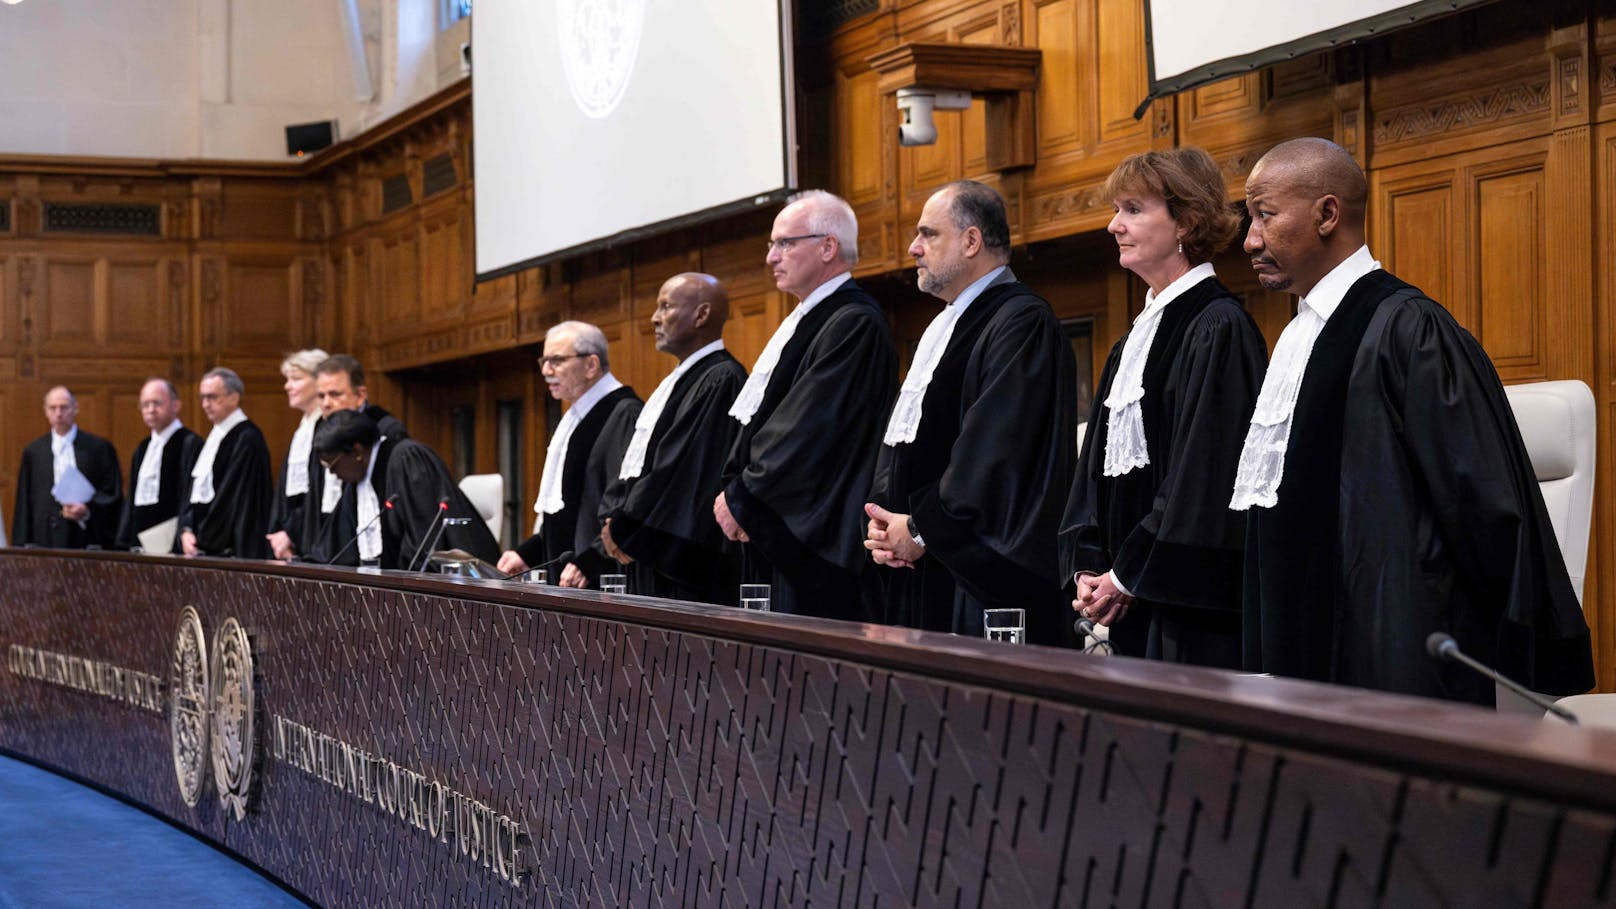 Internationaler Gerichtshof fordert Stopp von Israel